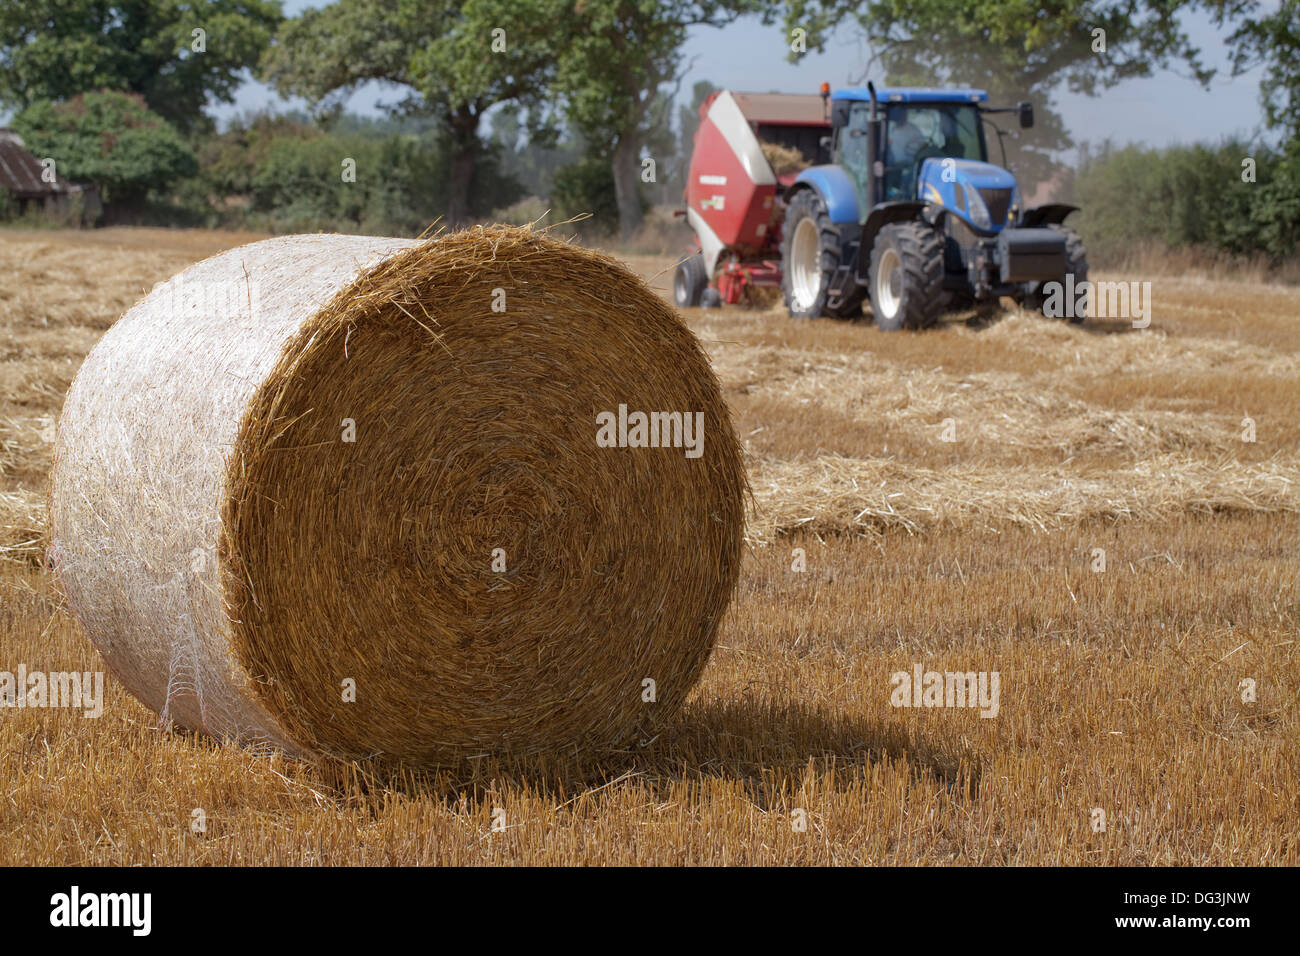 Rund Traktor gezogen, Pressen Maschine, arbeiten über Reihen kombinieren geerntete Stroh vom Schnitt und Getreide gedroschen. Stockfoto